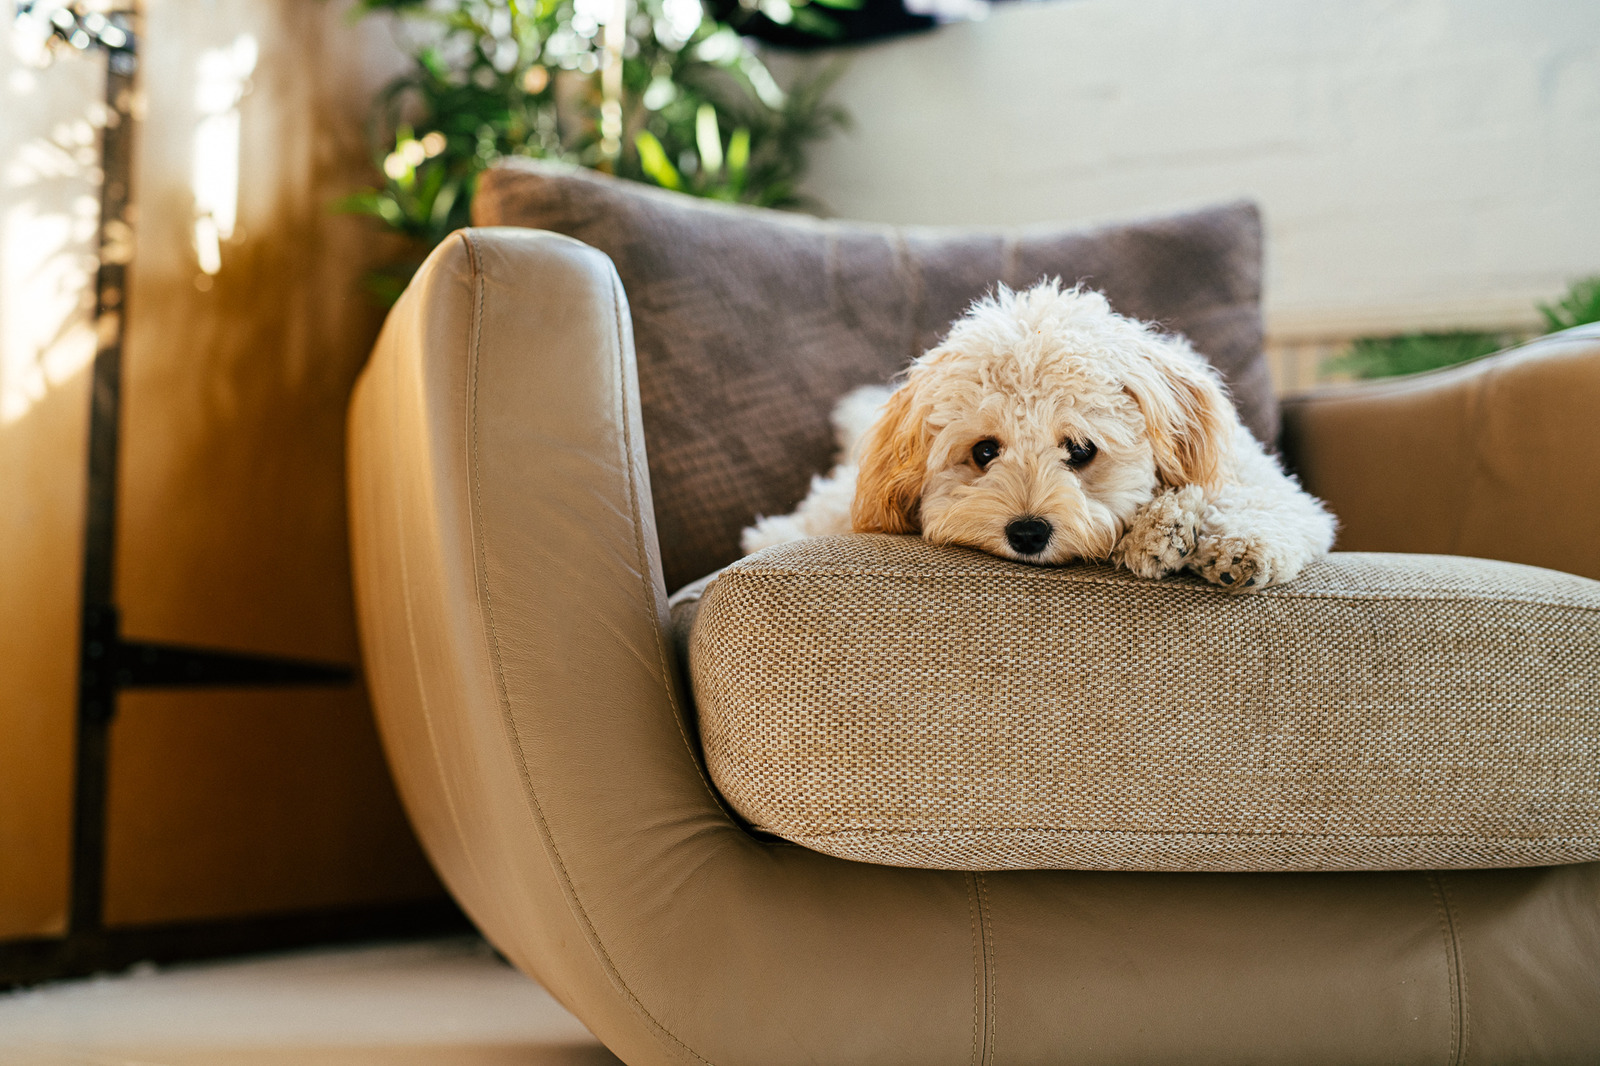 klein wit geconstipeerd hondje ligt zielig op beige fauteuil